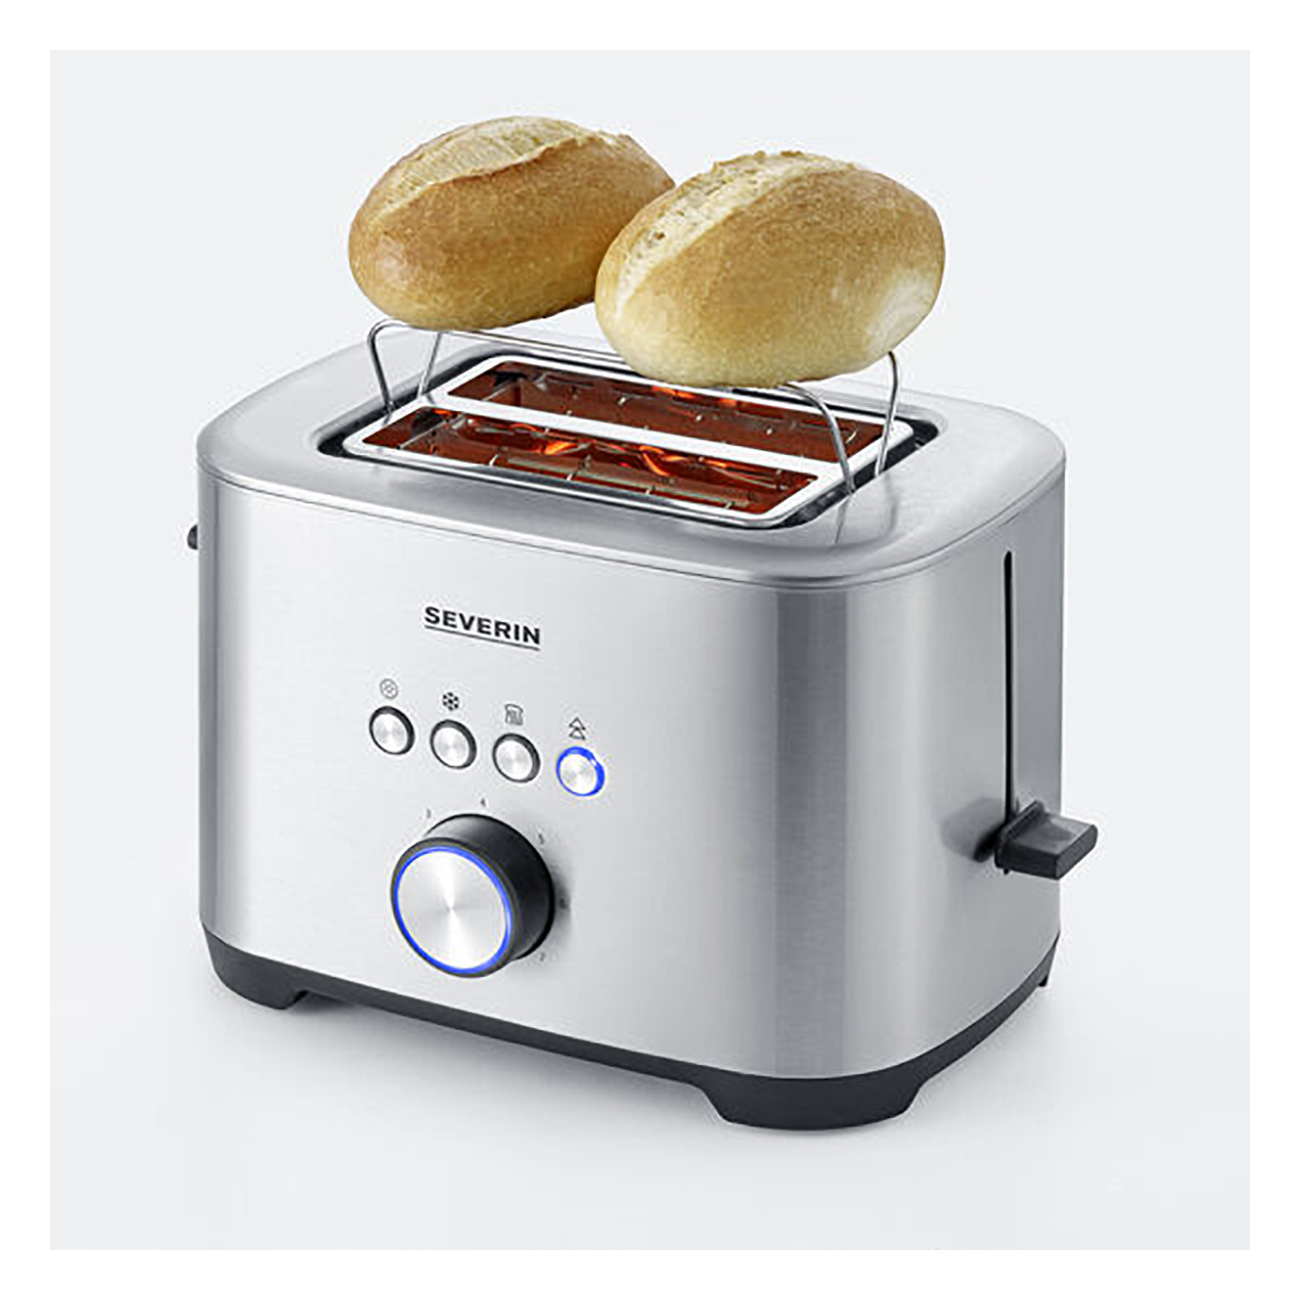 (800 2) Schlitze: AT 2510 Watt, silber SEVERIN Toaster